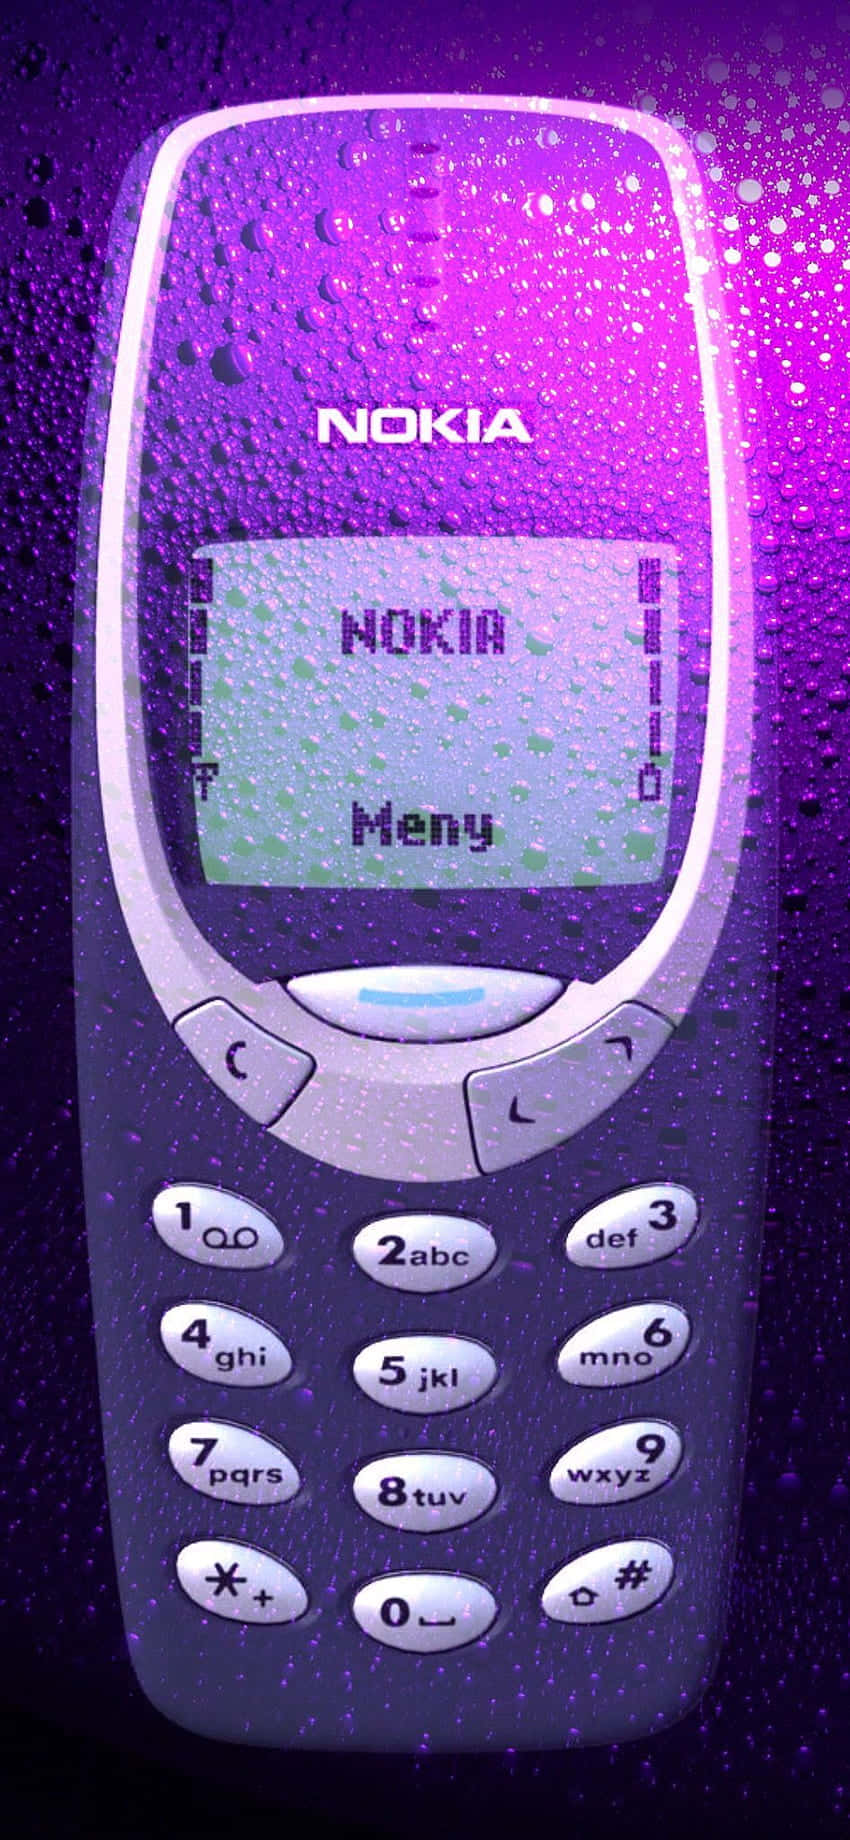 Esplorainfinite Possibilità Con Nokia 850